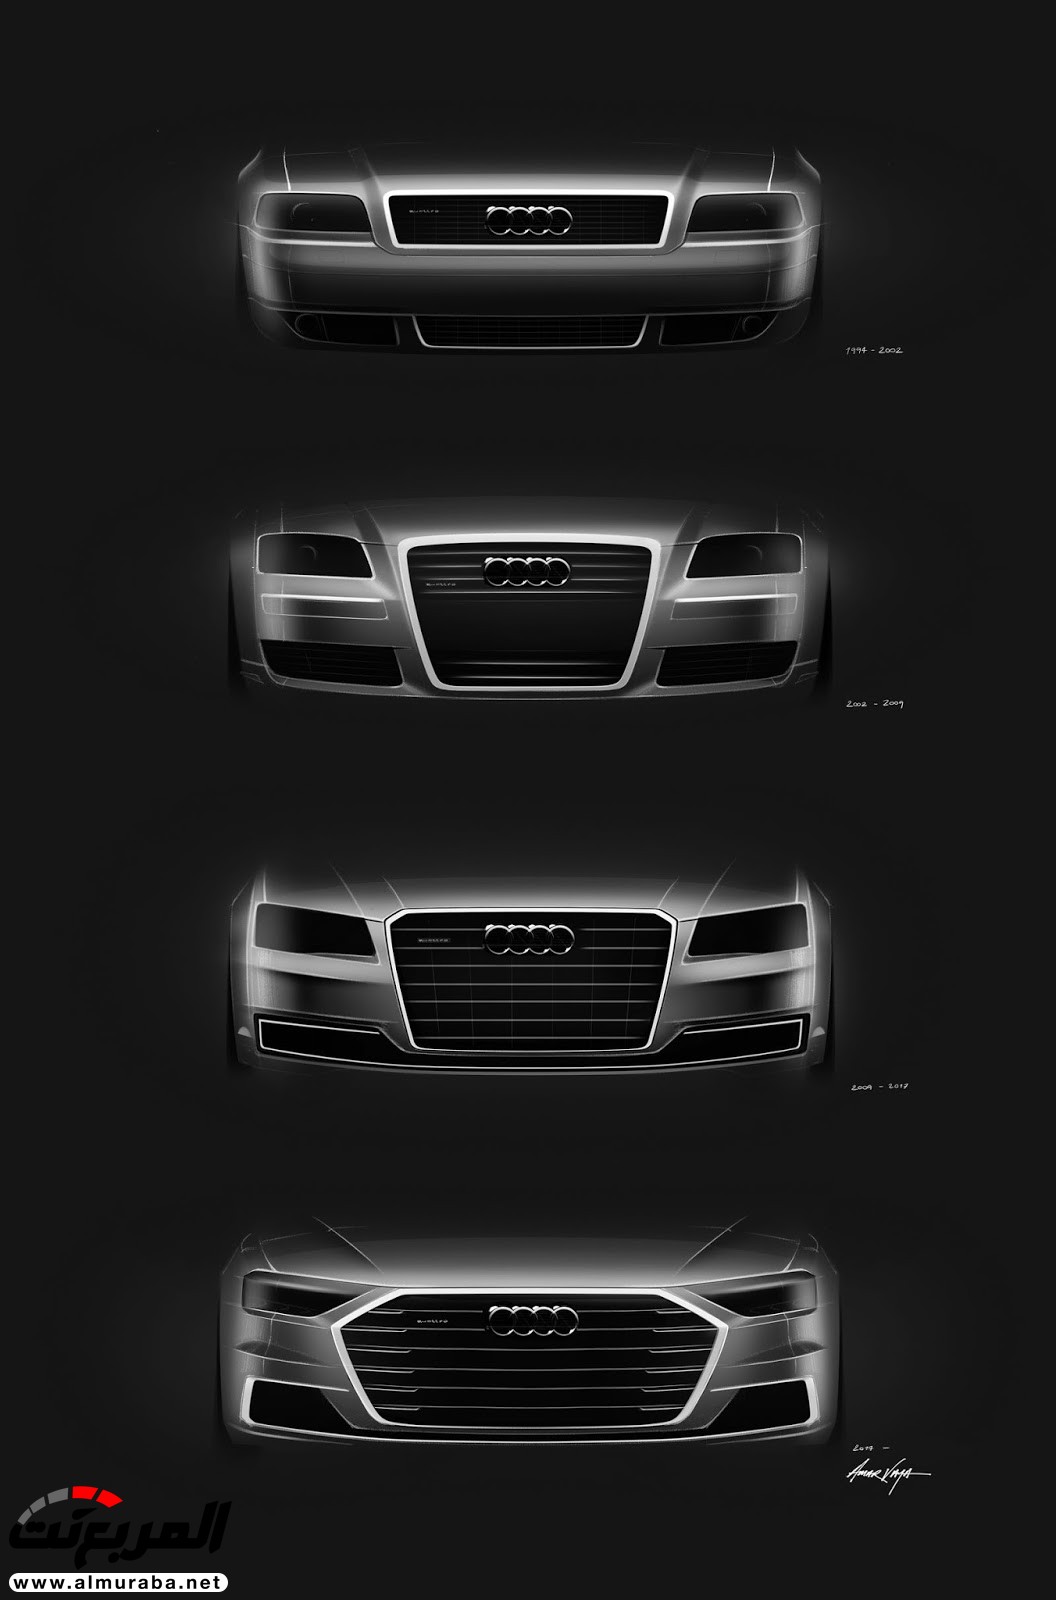 أودي A8 2018 الجديدة كلياً تكشف نفسها بتصميم وتقنيات متطورة "معلومات + 100 صورة" Audi A8 117